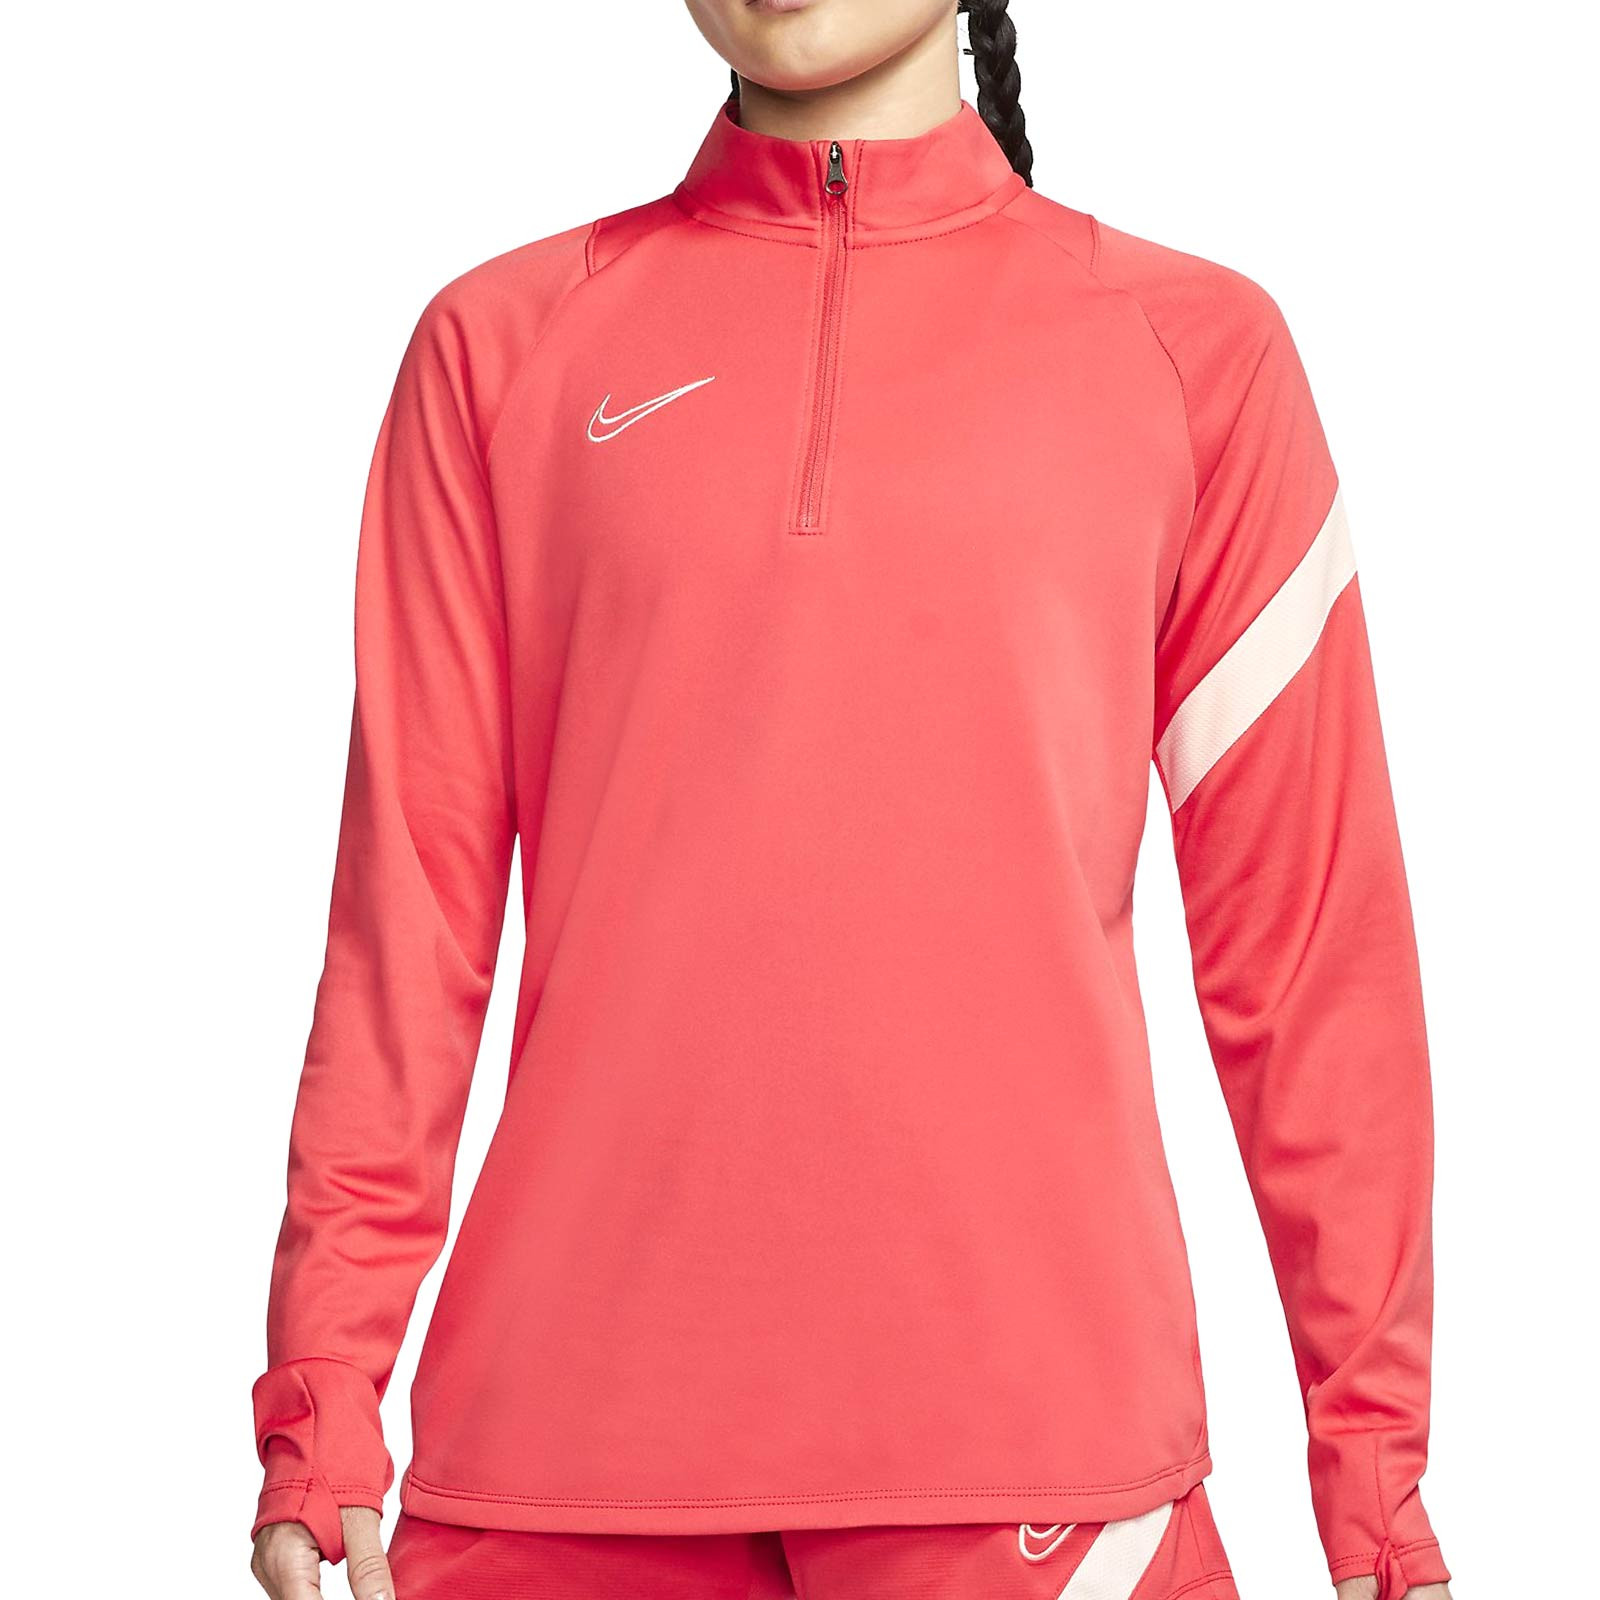 Sudadera Nike mujer Dry Academy Pro rosa | futbolmania